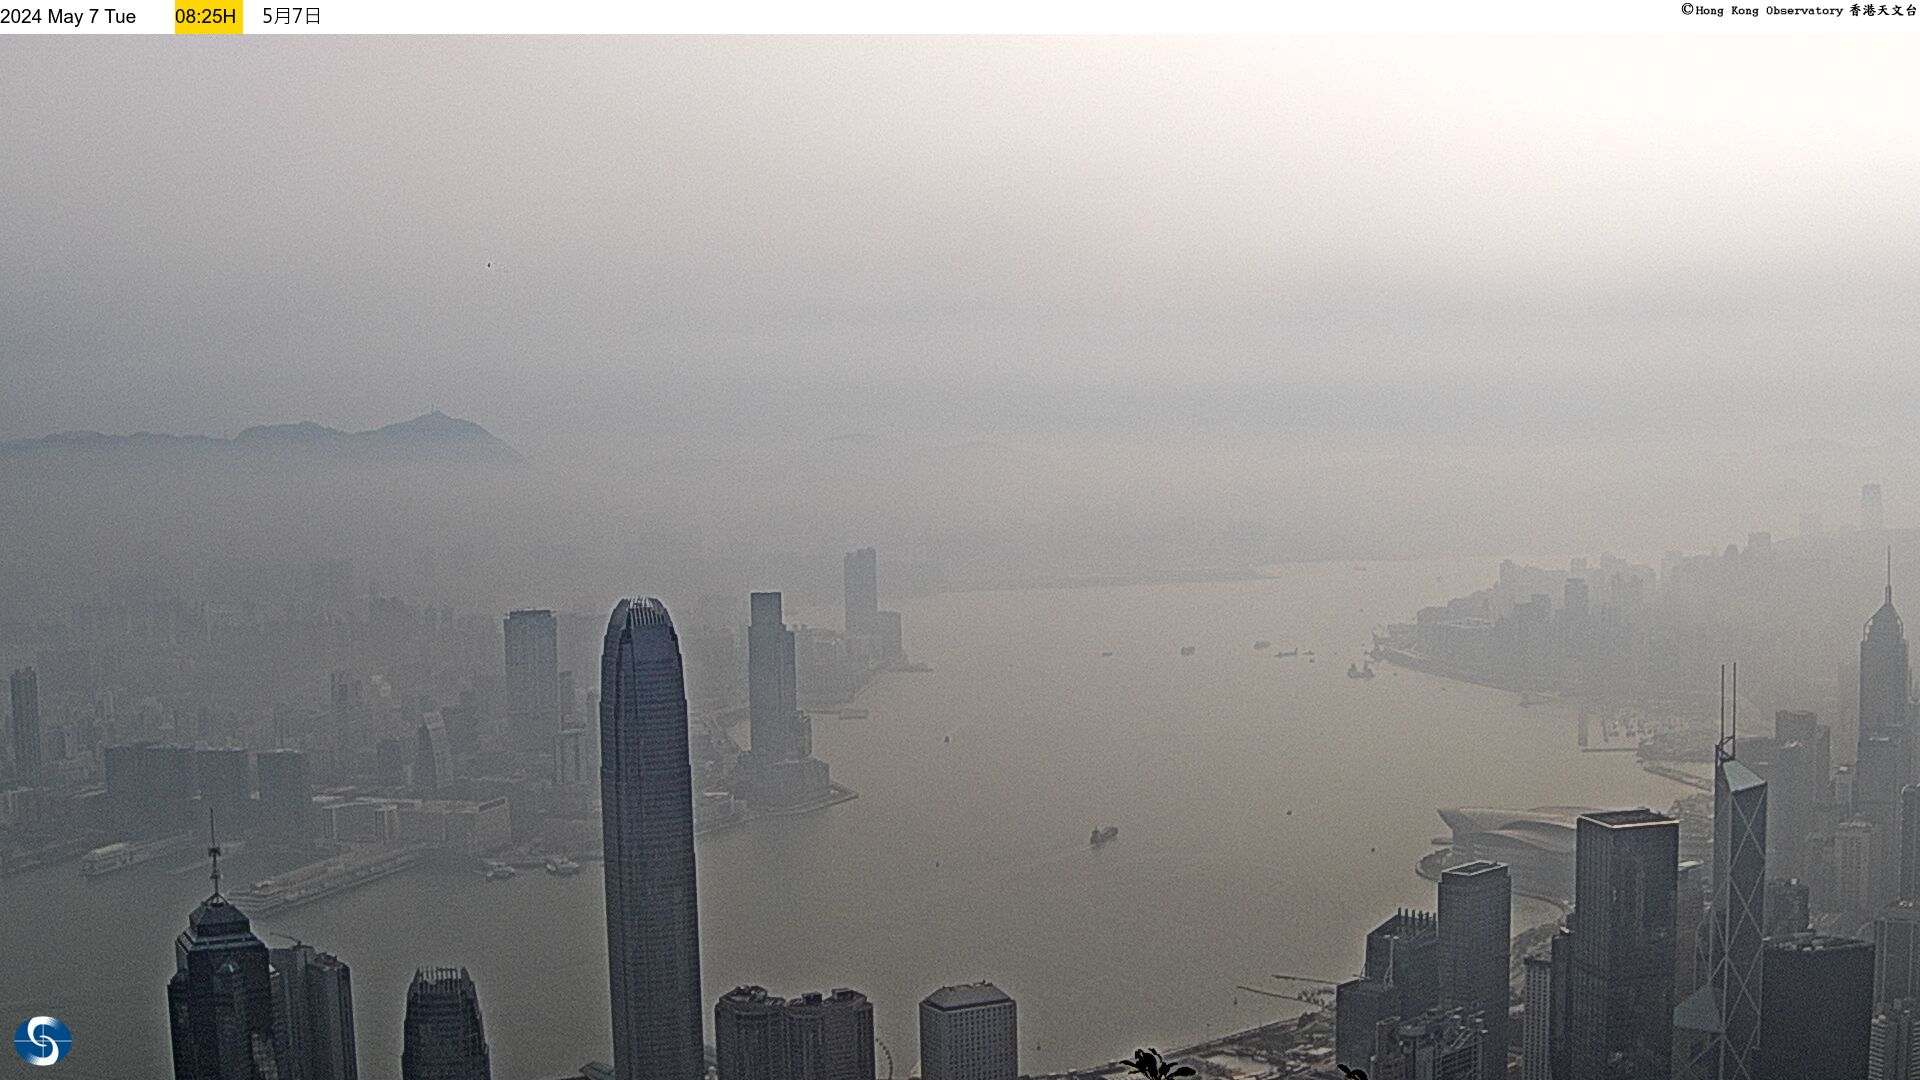 Hong Kong Fri. 08:34